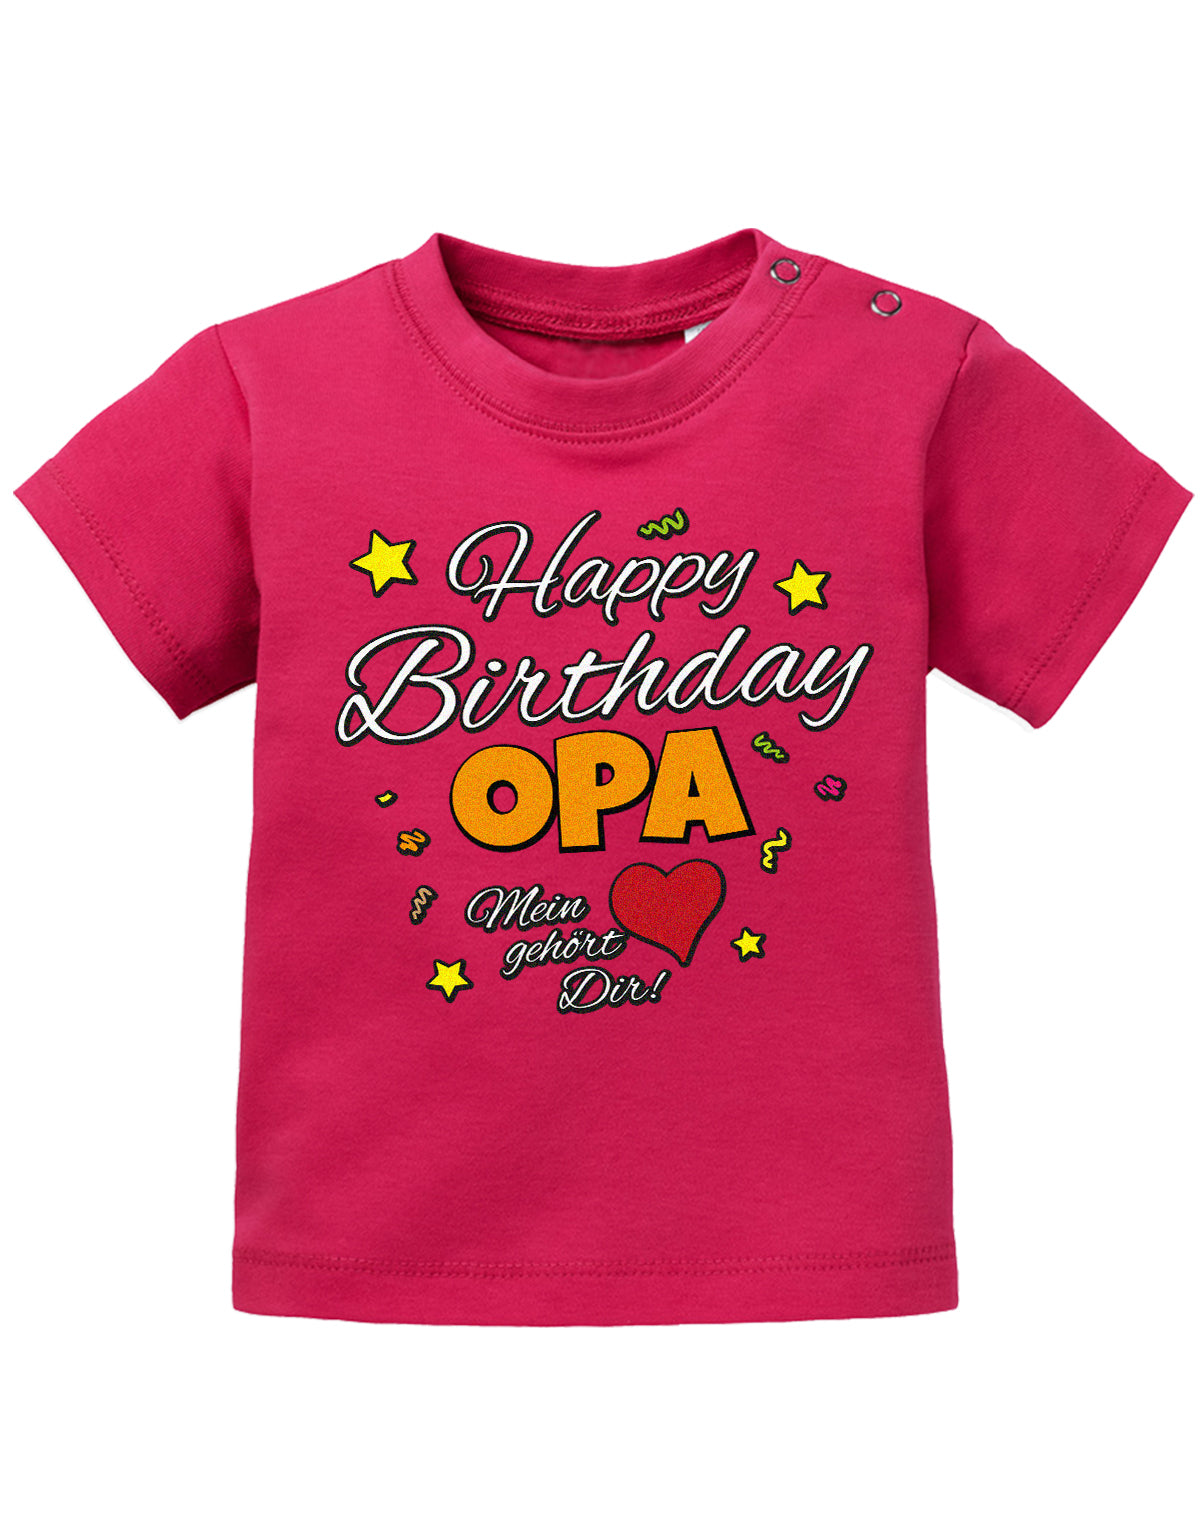 Opa Spruch Baby Shirt. Happy Birthday, Opa, mein Herz gehört Dir. Sorbet